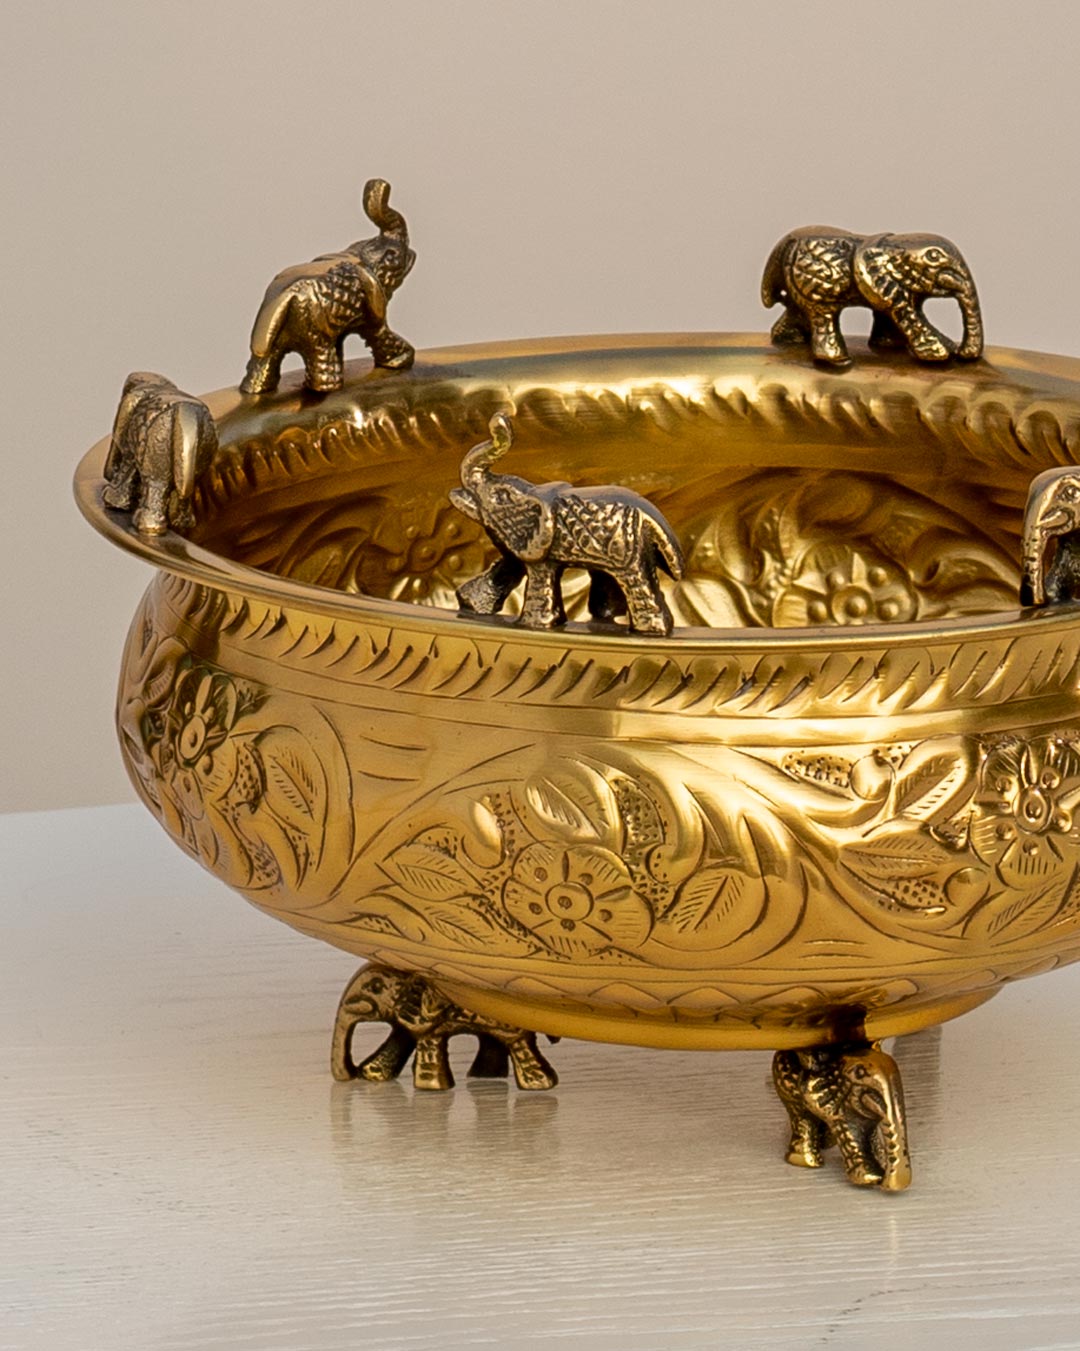 Adorning Elephants Designed Urli Bowl - 10"